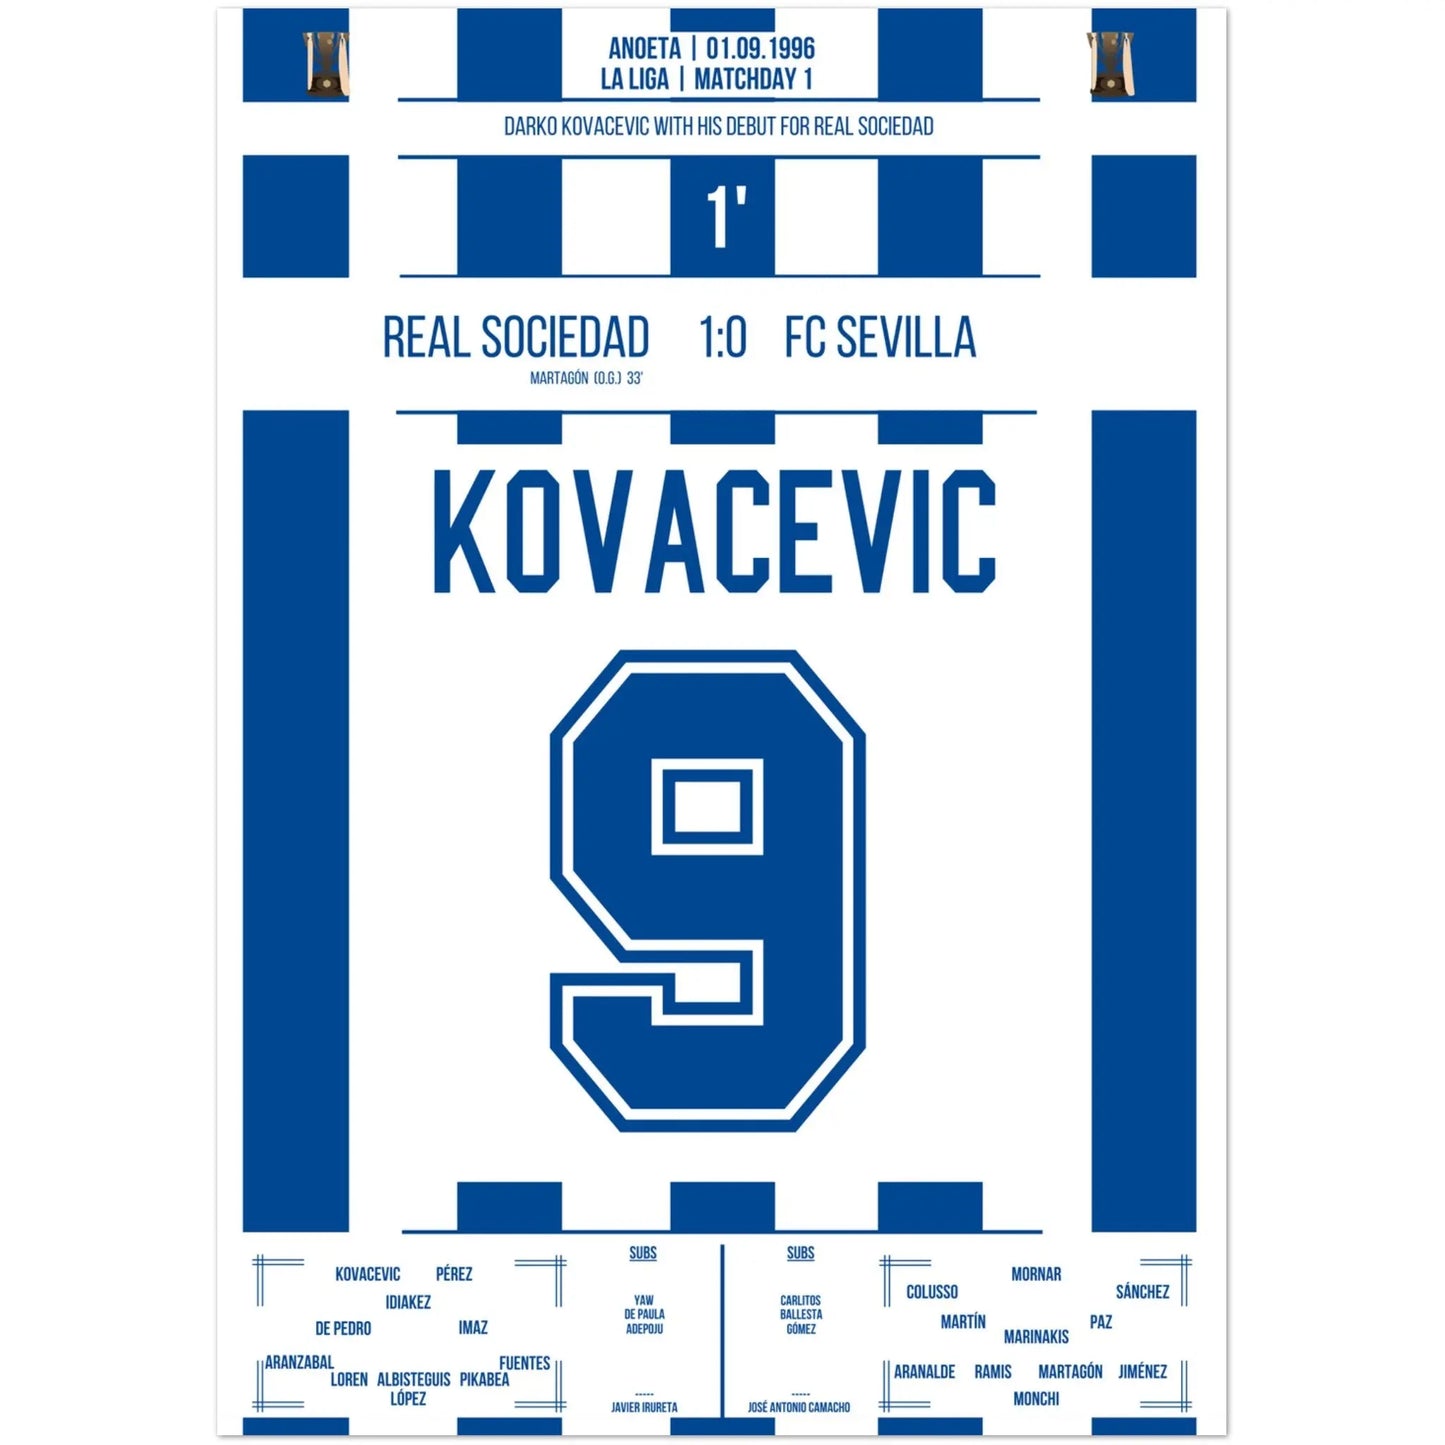 Darko Kovacevic maakte zijn debuut voor Real Sociedad in 1996